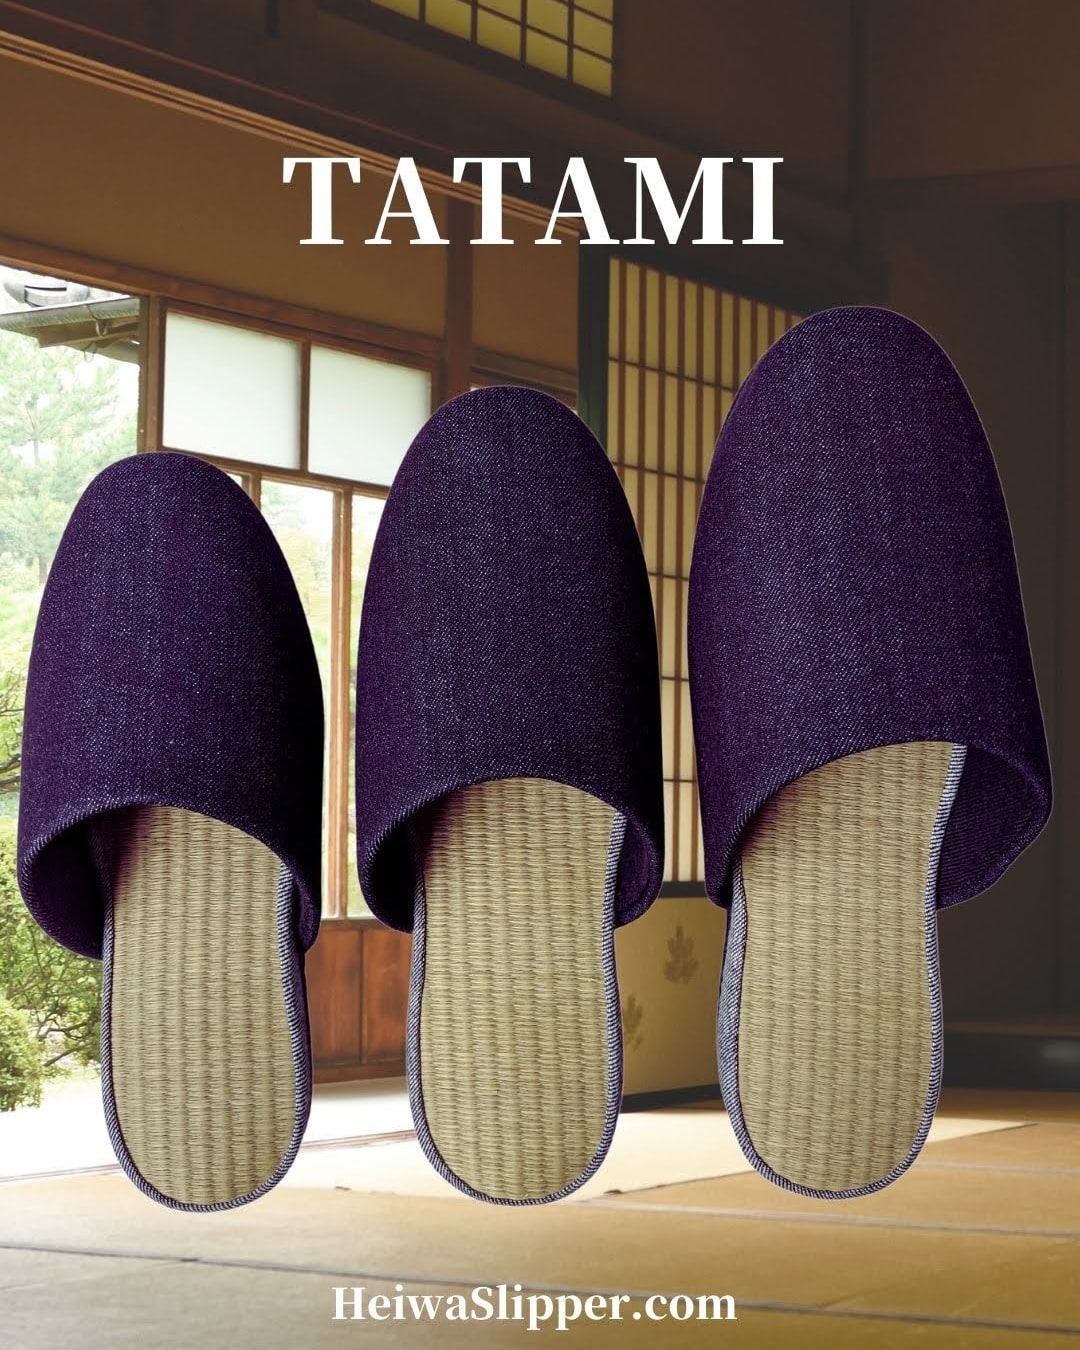 Tatami Japanese slipers